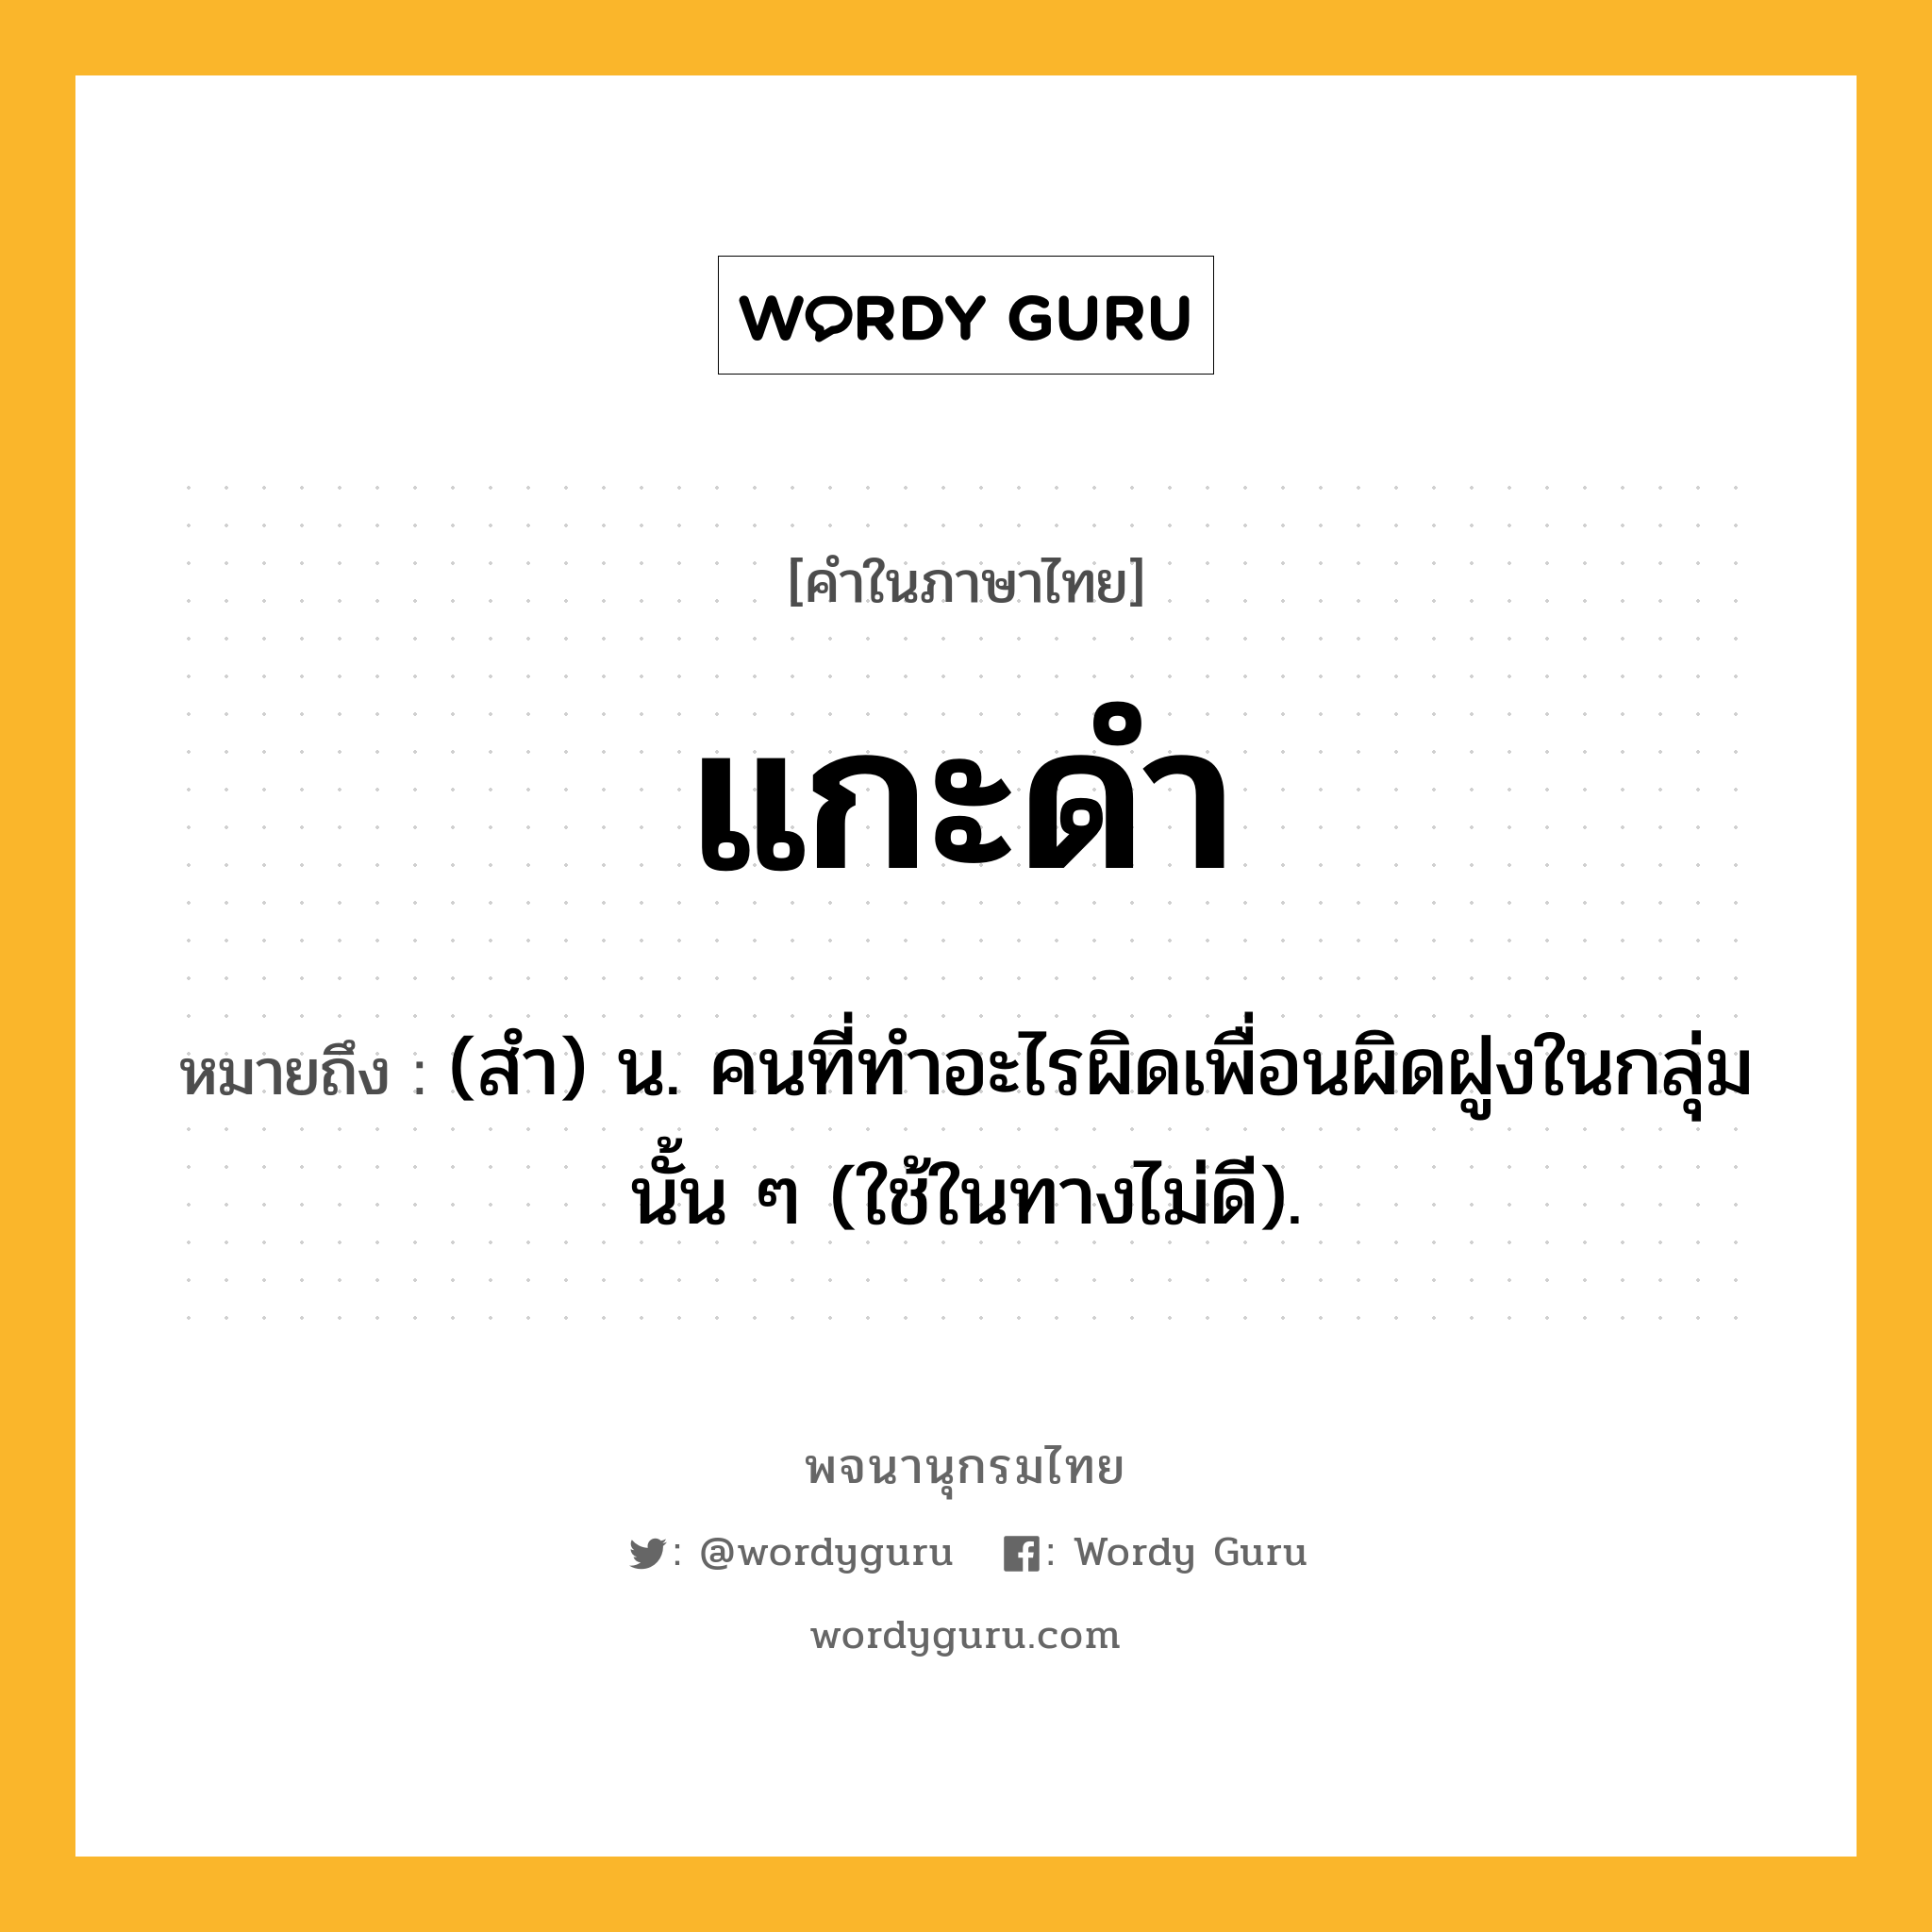 แกะดำ หมายถึงอะไร?, คำในภาษาไทย แกะดำ หมายถึง (สํา) น. คนที่ทําอะไรผิดเพื่อนผิดฝูงในกลุ่มนั้น ๆ (ใช้ในทางไม่ดี).